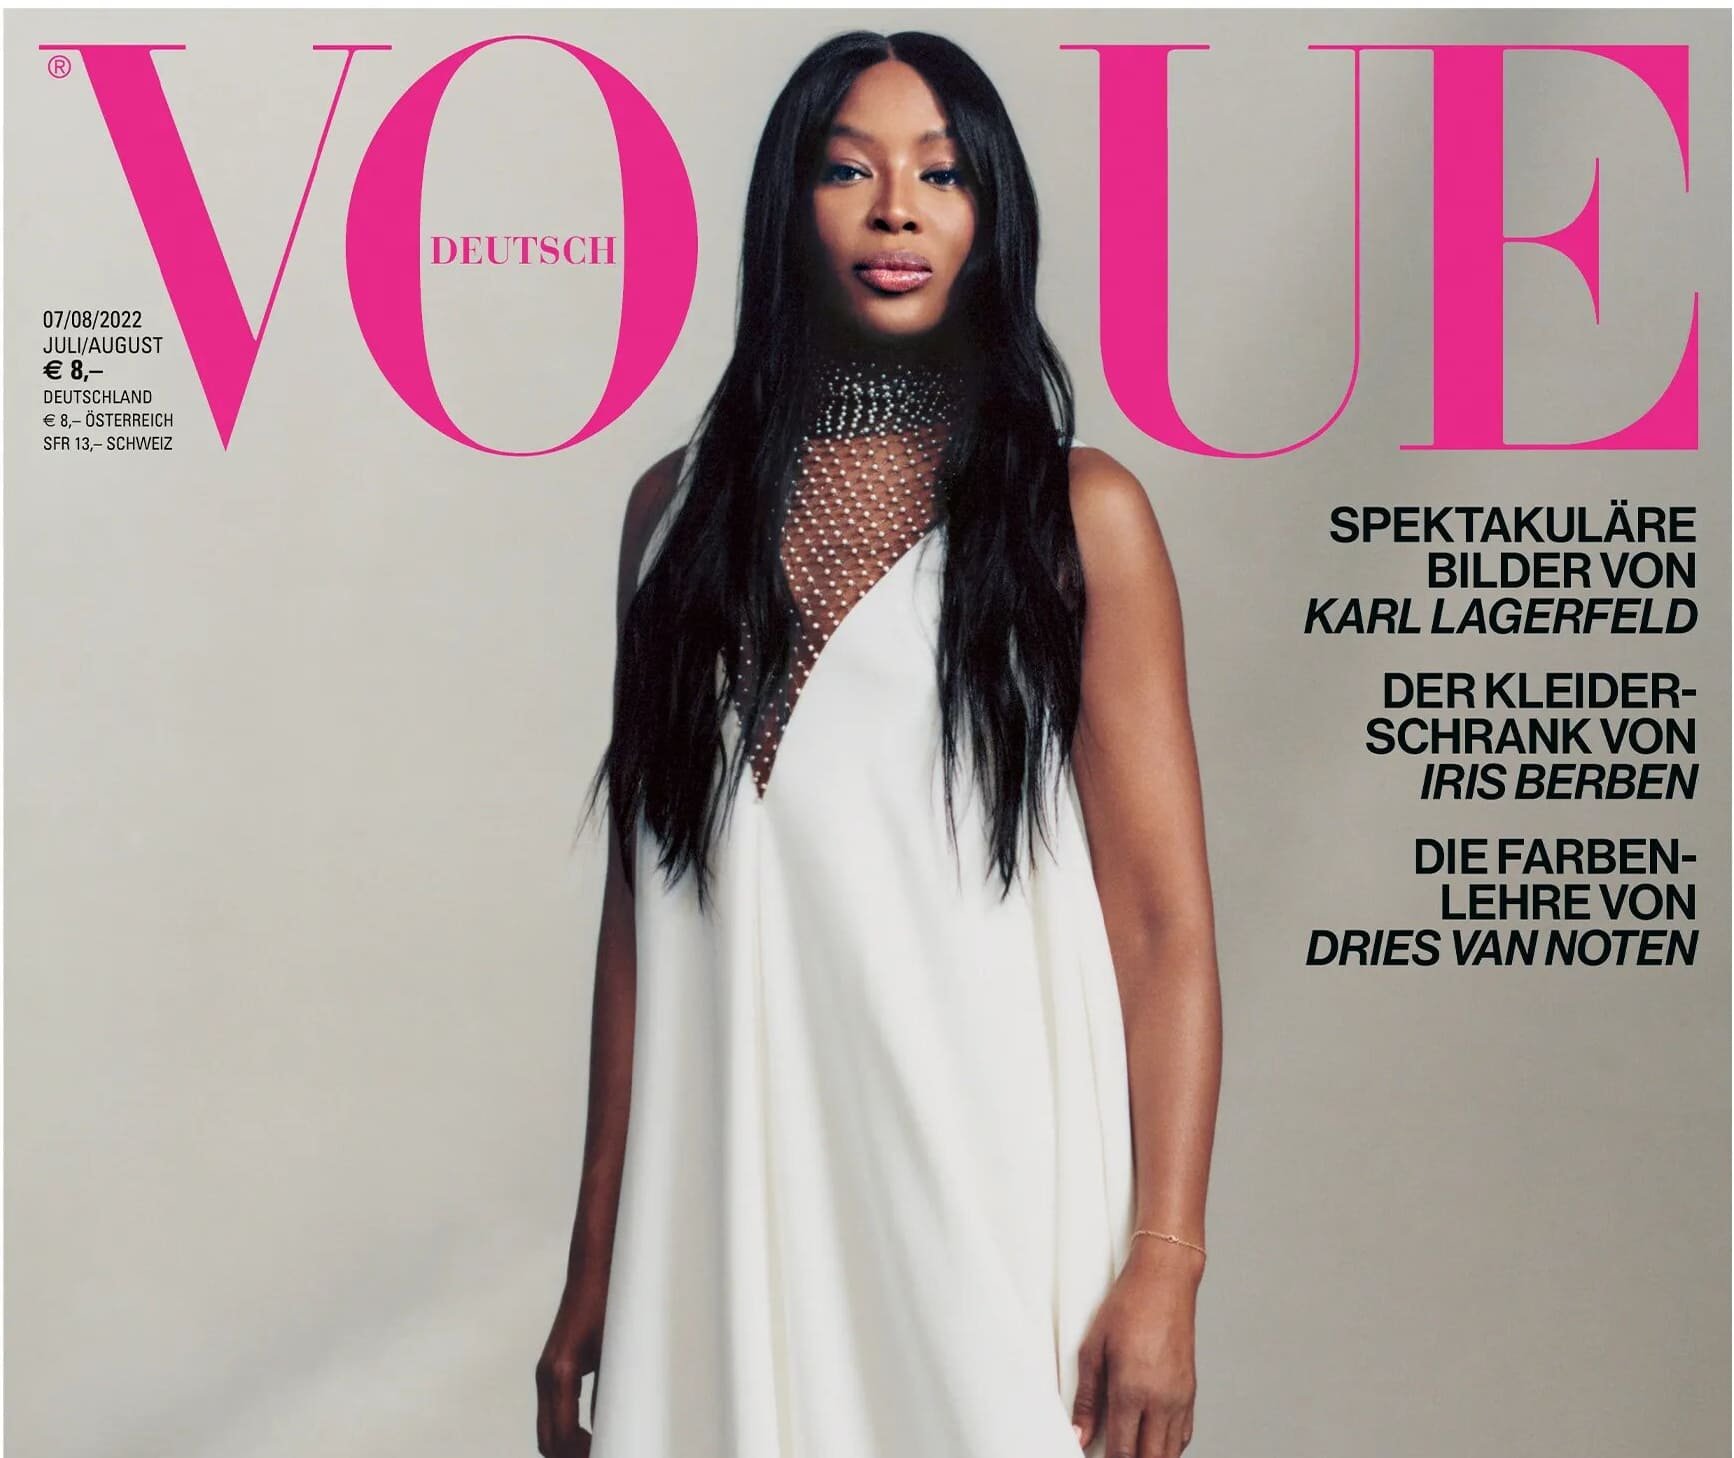 Икона поп-культуры Наоми Кэмпбелл очаровывает своей красотой в журнале Vogue